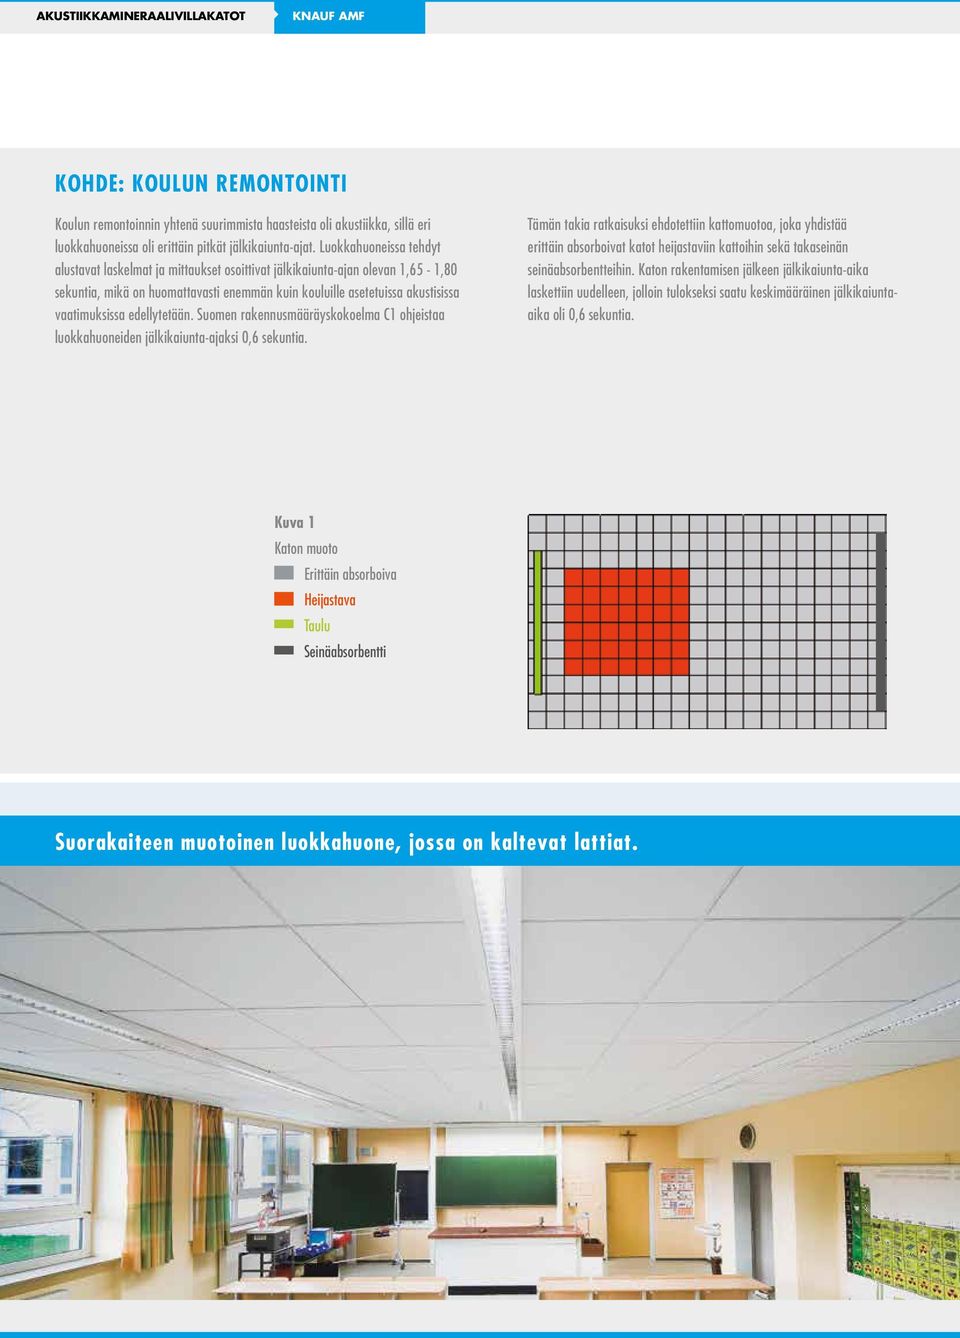 edellytetään. Suomen rakennusmääräyskokoelma C1 ohjeistaa luokkahuoneiden jälkikaiunta-ajaksi,6 sekuntia.